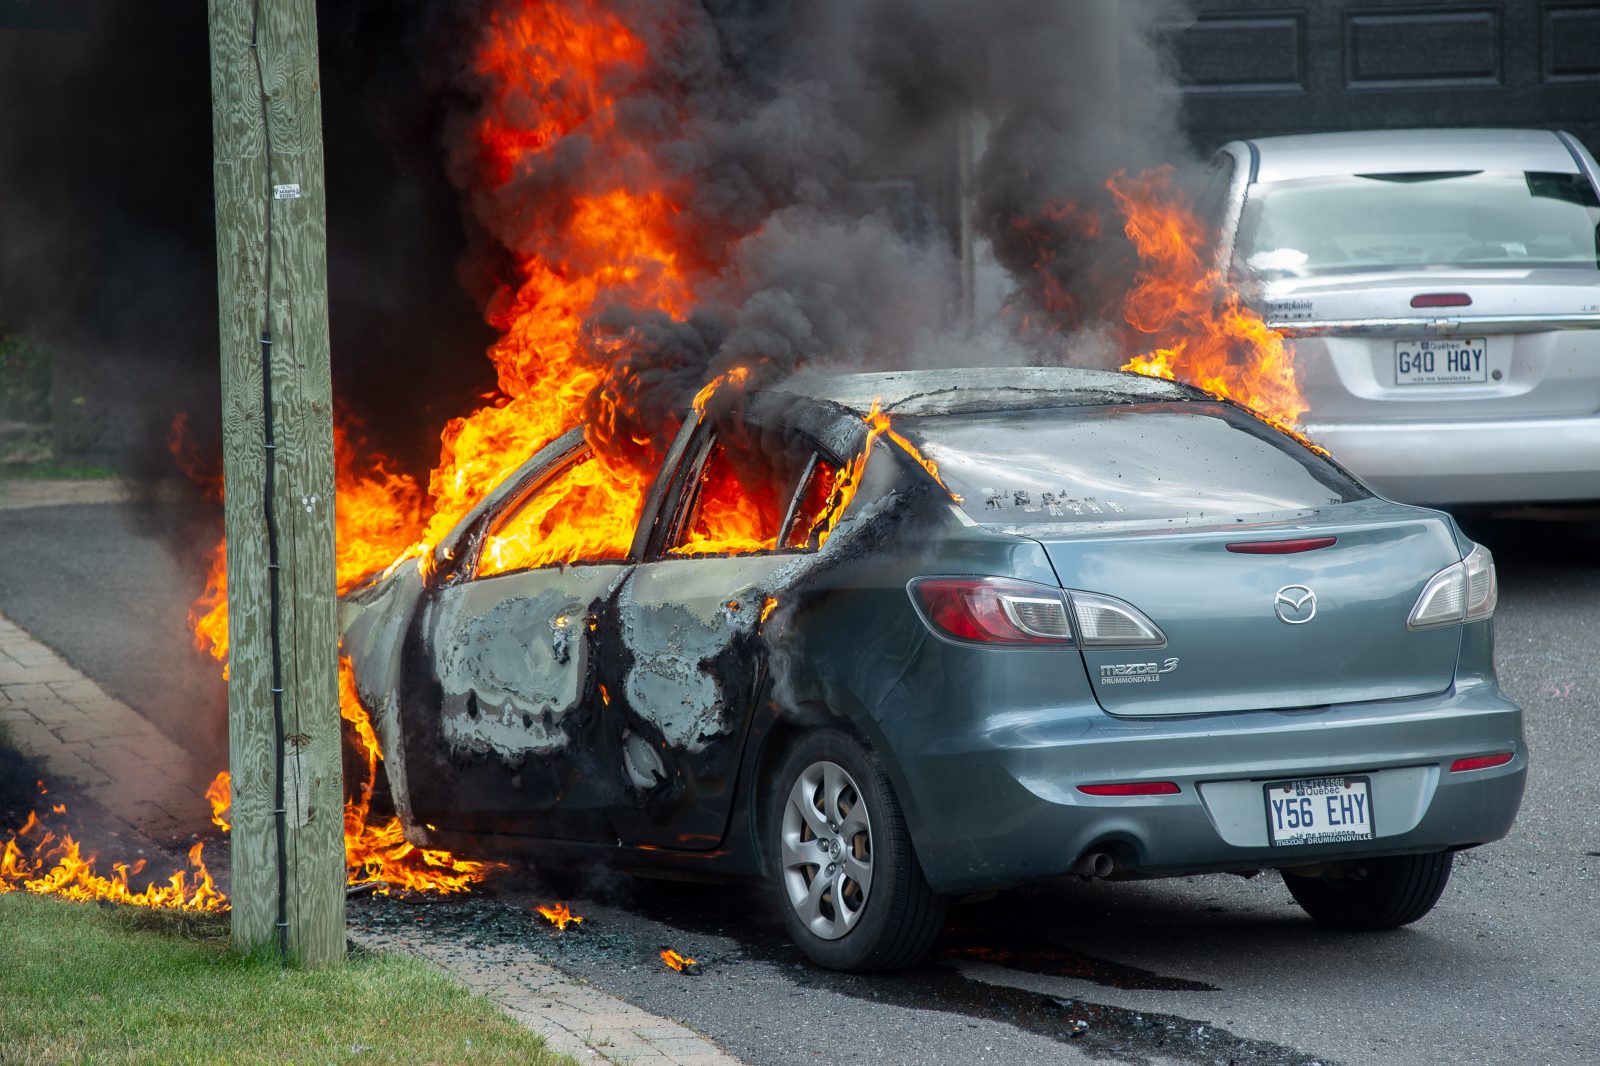 Une voiture détruite par les flammes